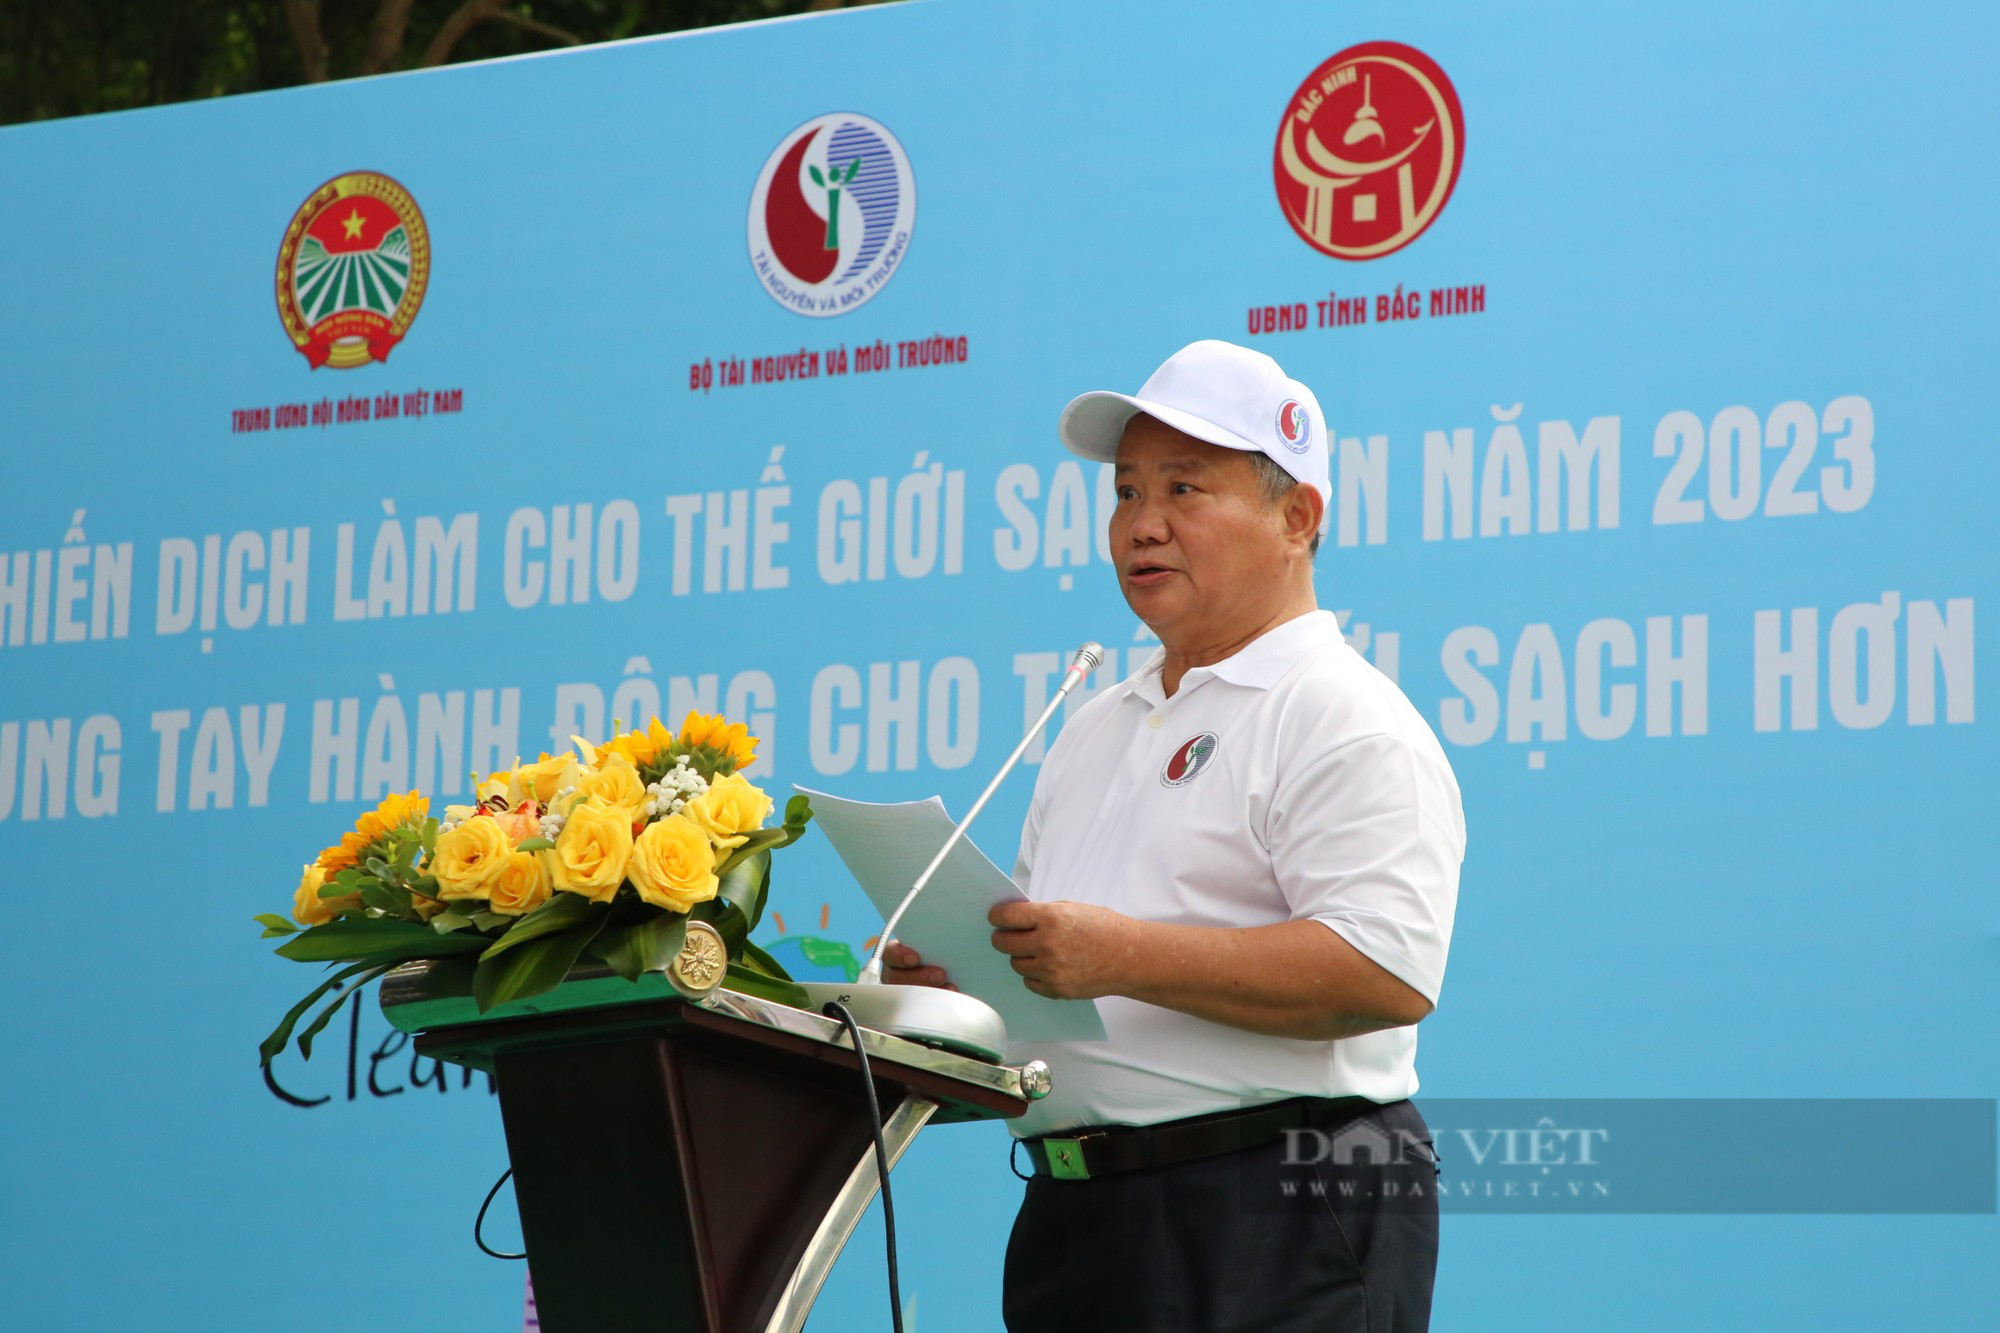 Trung ương Hội Nông dân Việt Nam cùng Bộ TNMT, tỉnh Bắc Ninh phát động Chiến dịch làm cho thế giới sạch hơn - Ảnh 1.